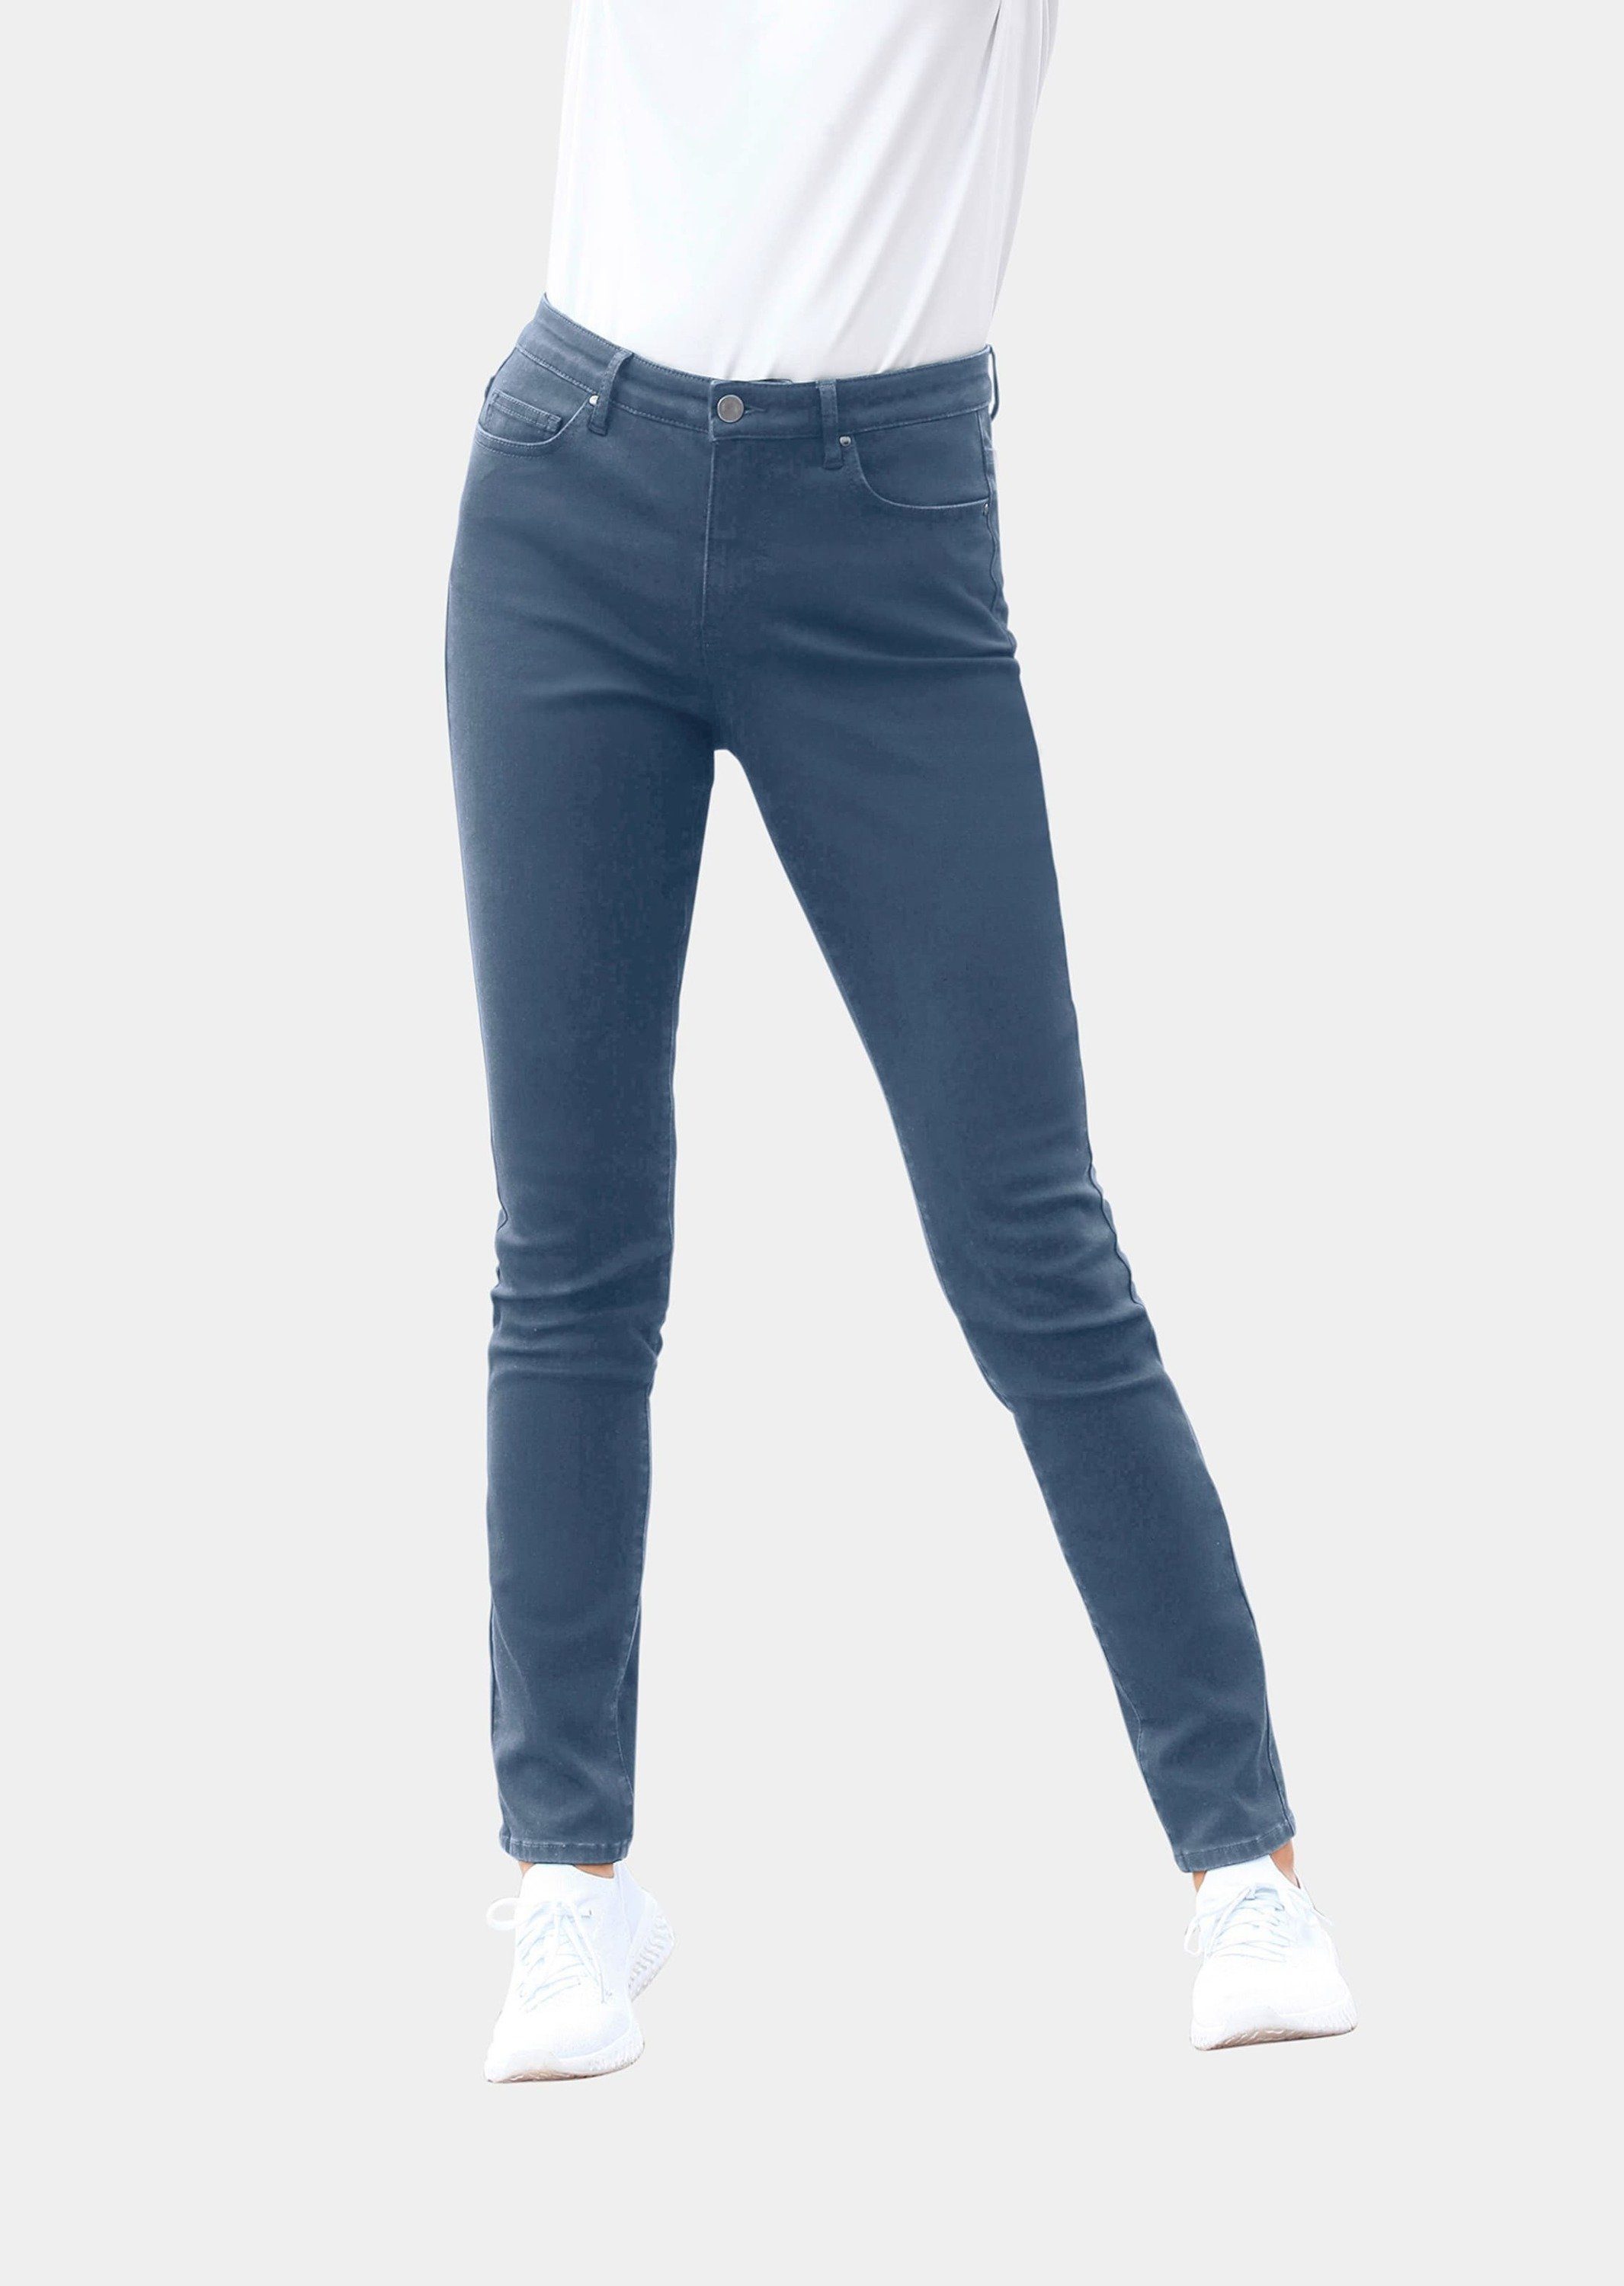 Jeans Kurzgröße: GOLDNER Bequeme hellblau